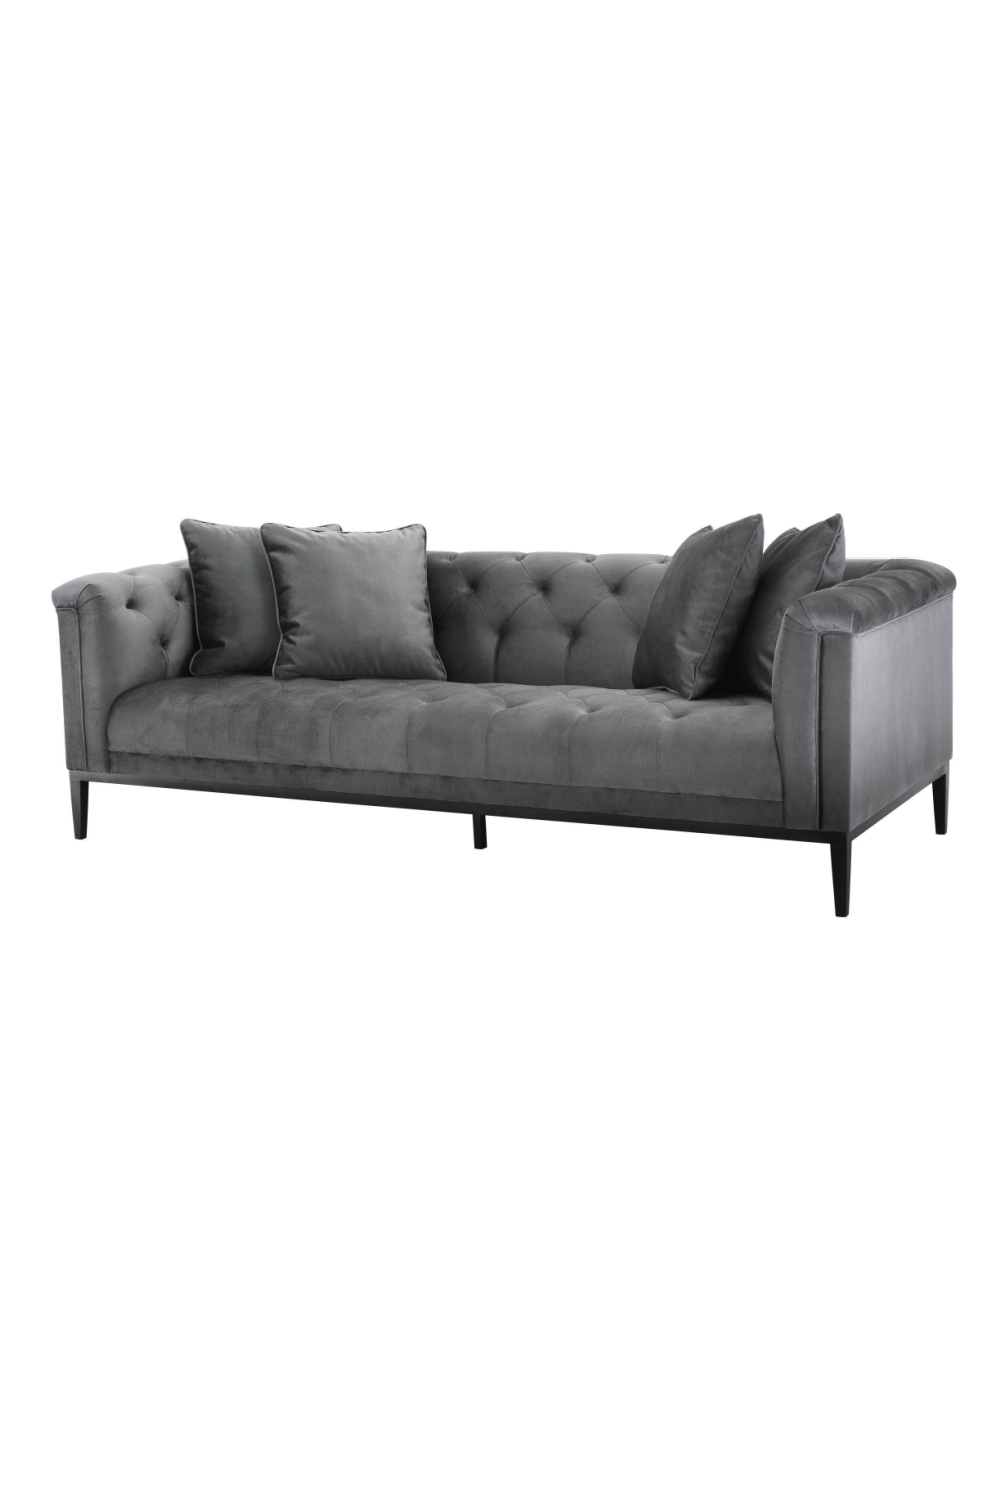 Granite Gray Sofa | Eichholtz Cesare | Oroa.com